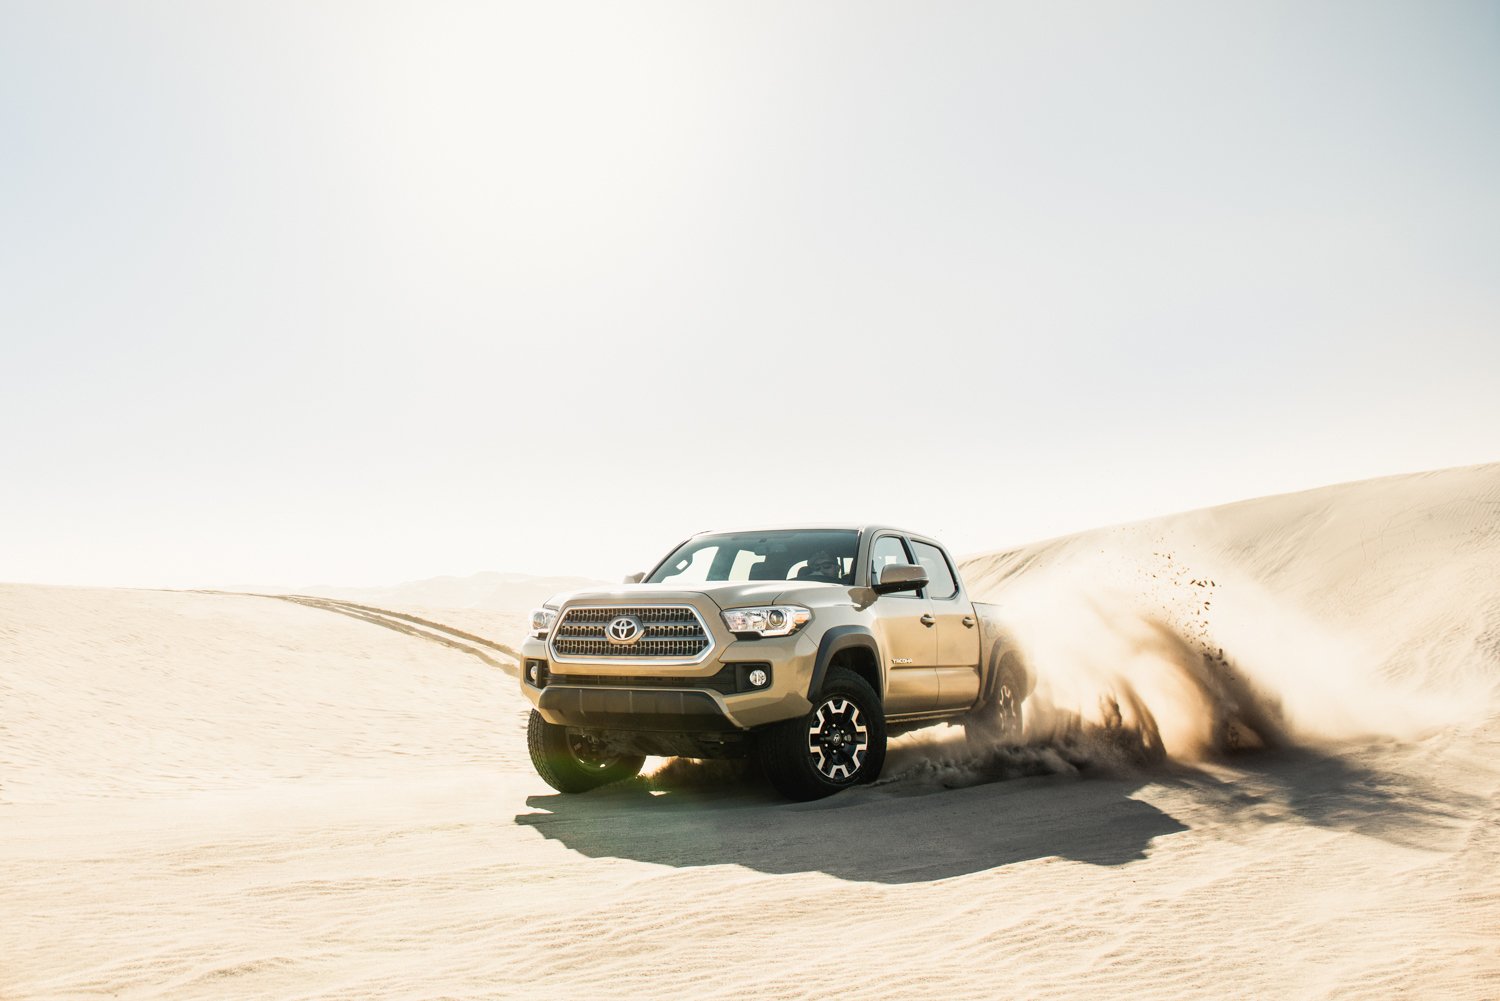 The Toyota Tacoma driving through the desert by Mark Skovorodko.